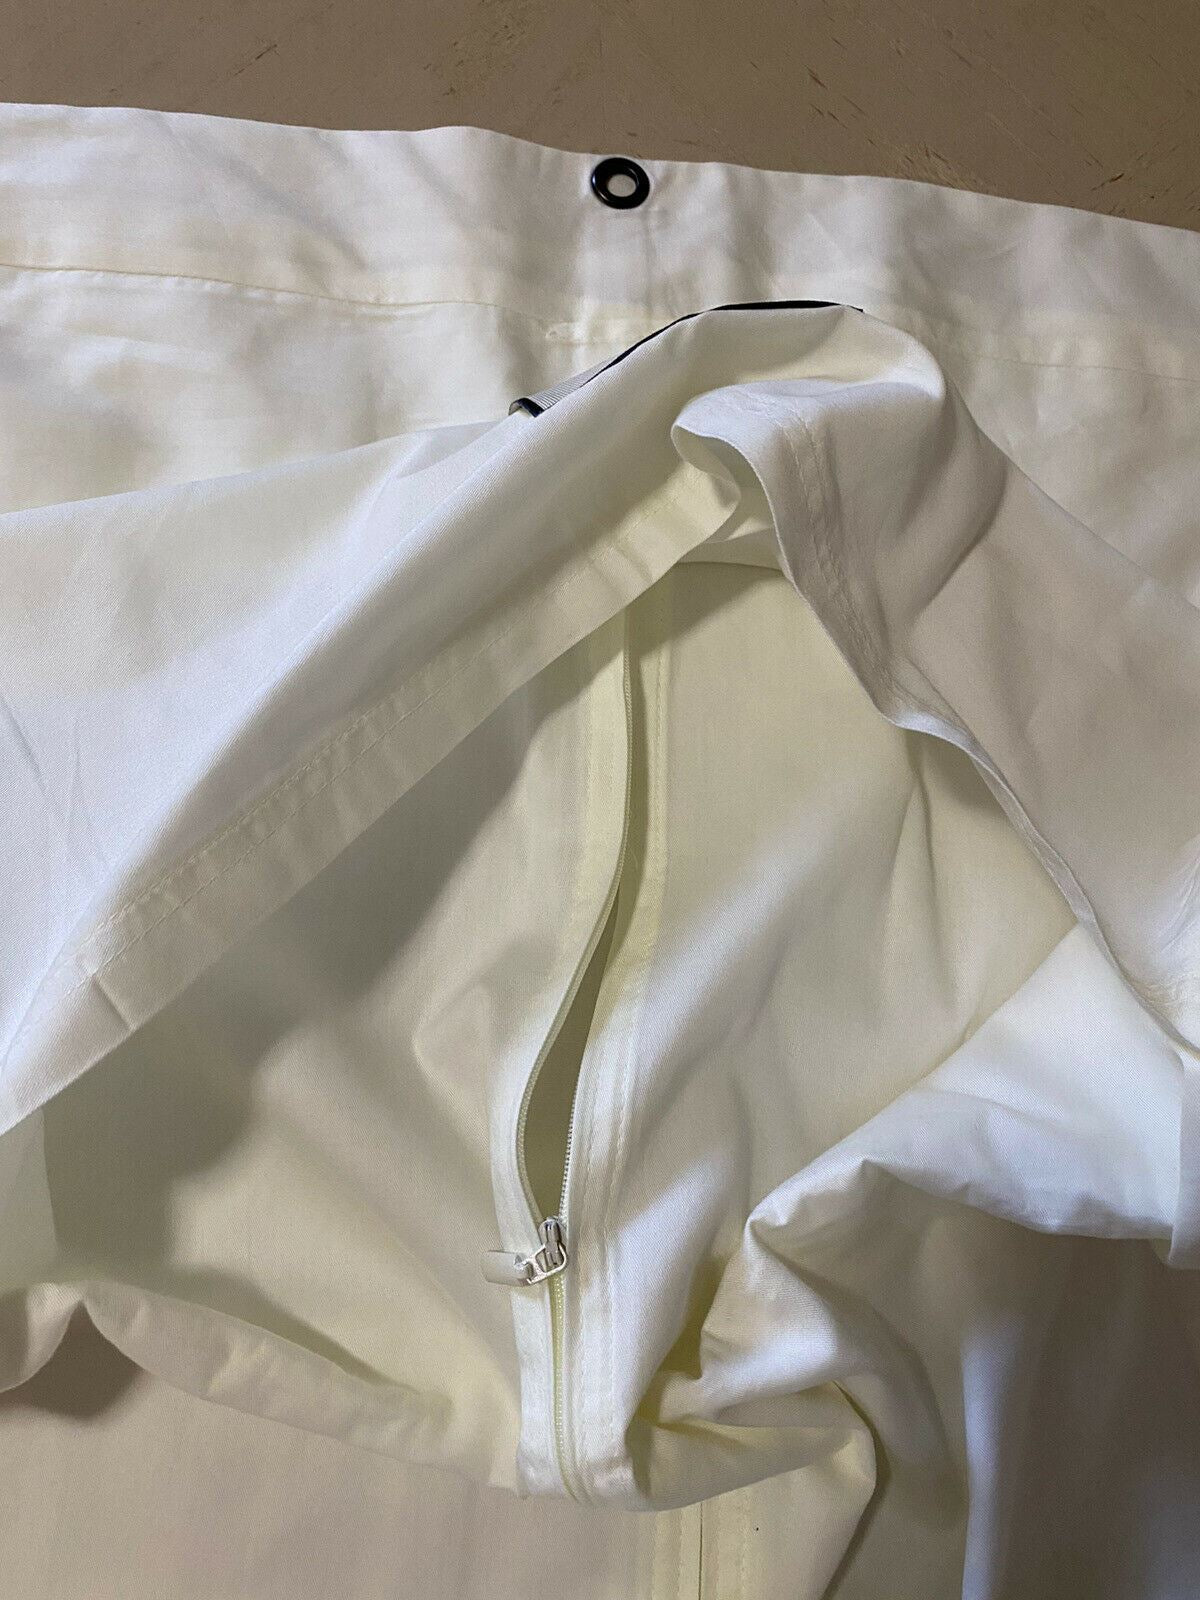 Brandneuer Gucci-Anzug, jede Kleidung, weiße Unisex-Tasche